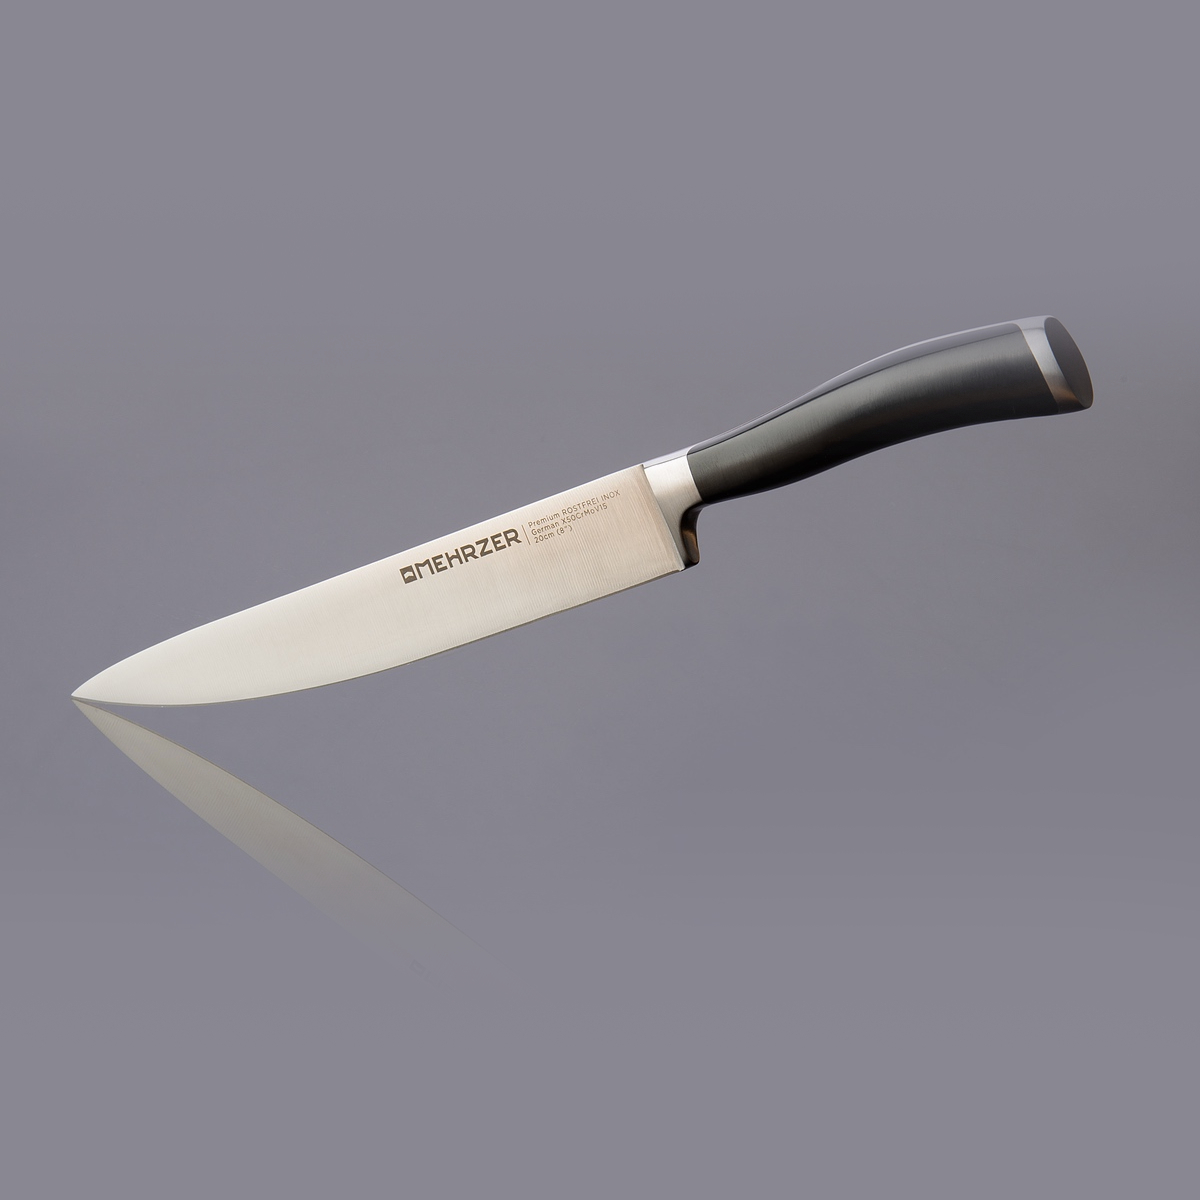 Нож универсальный Mehrzer 20 см, цвет серебристый - фото 2